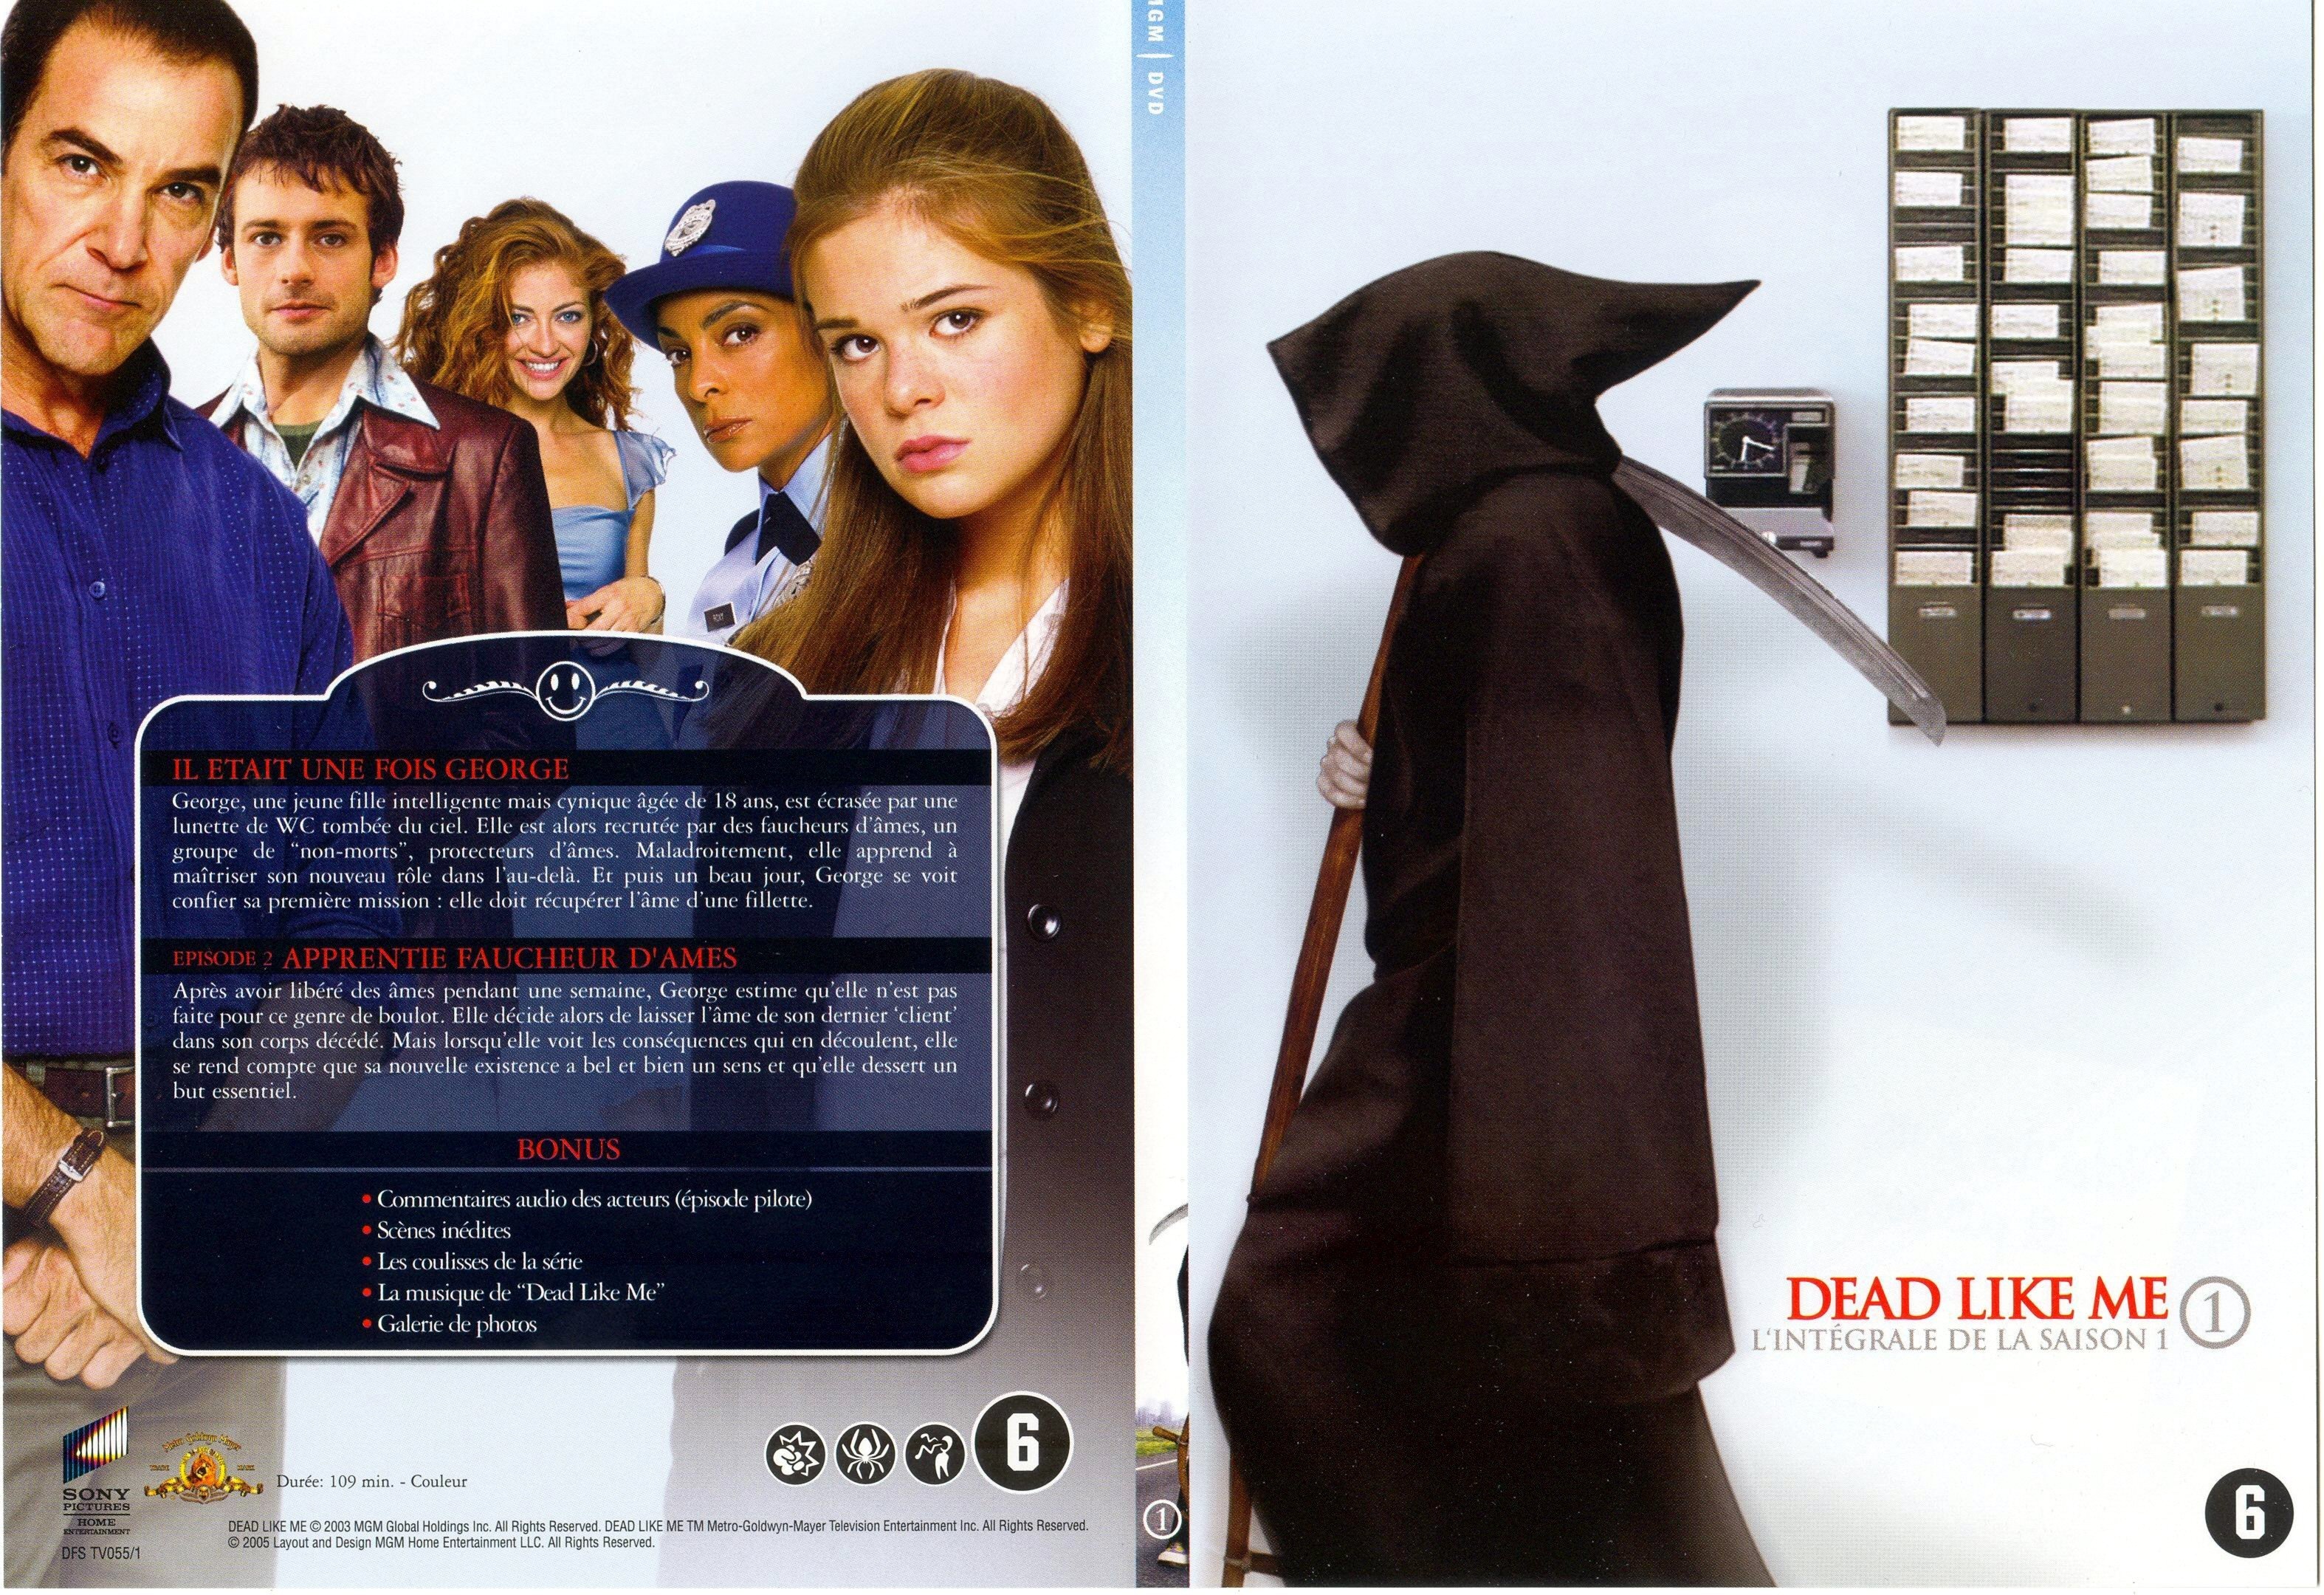 Jaquette DVD Dead Like Me saison 1 DVD 1